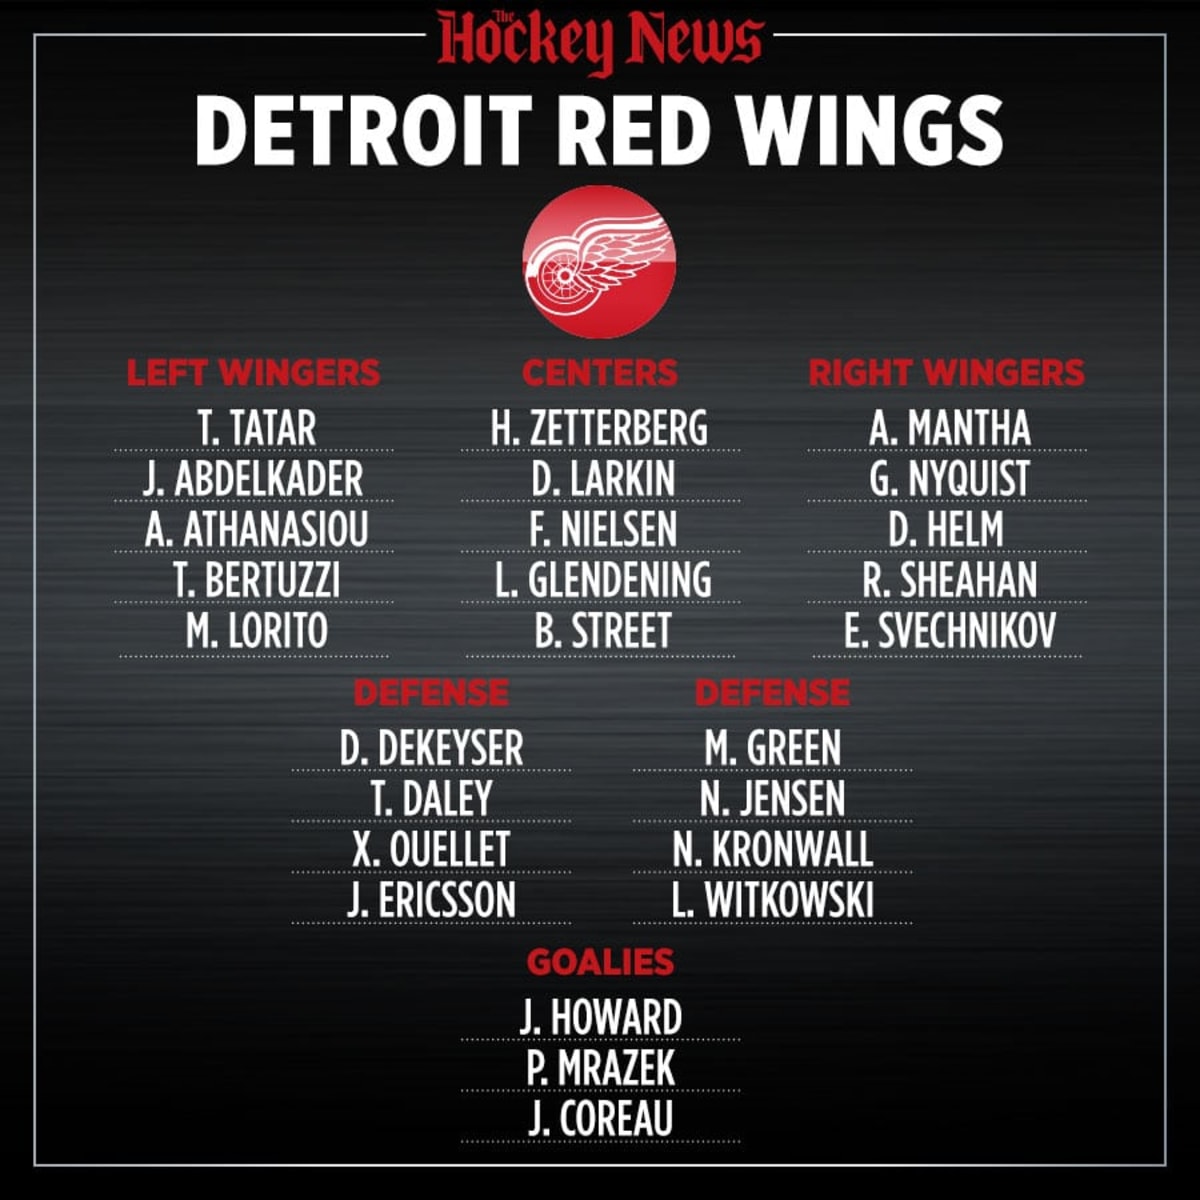 2017-18 Detroit Red Wings Media Guide - Red wings 2017-18-Wings